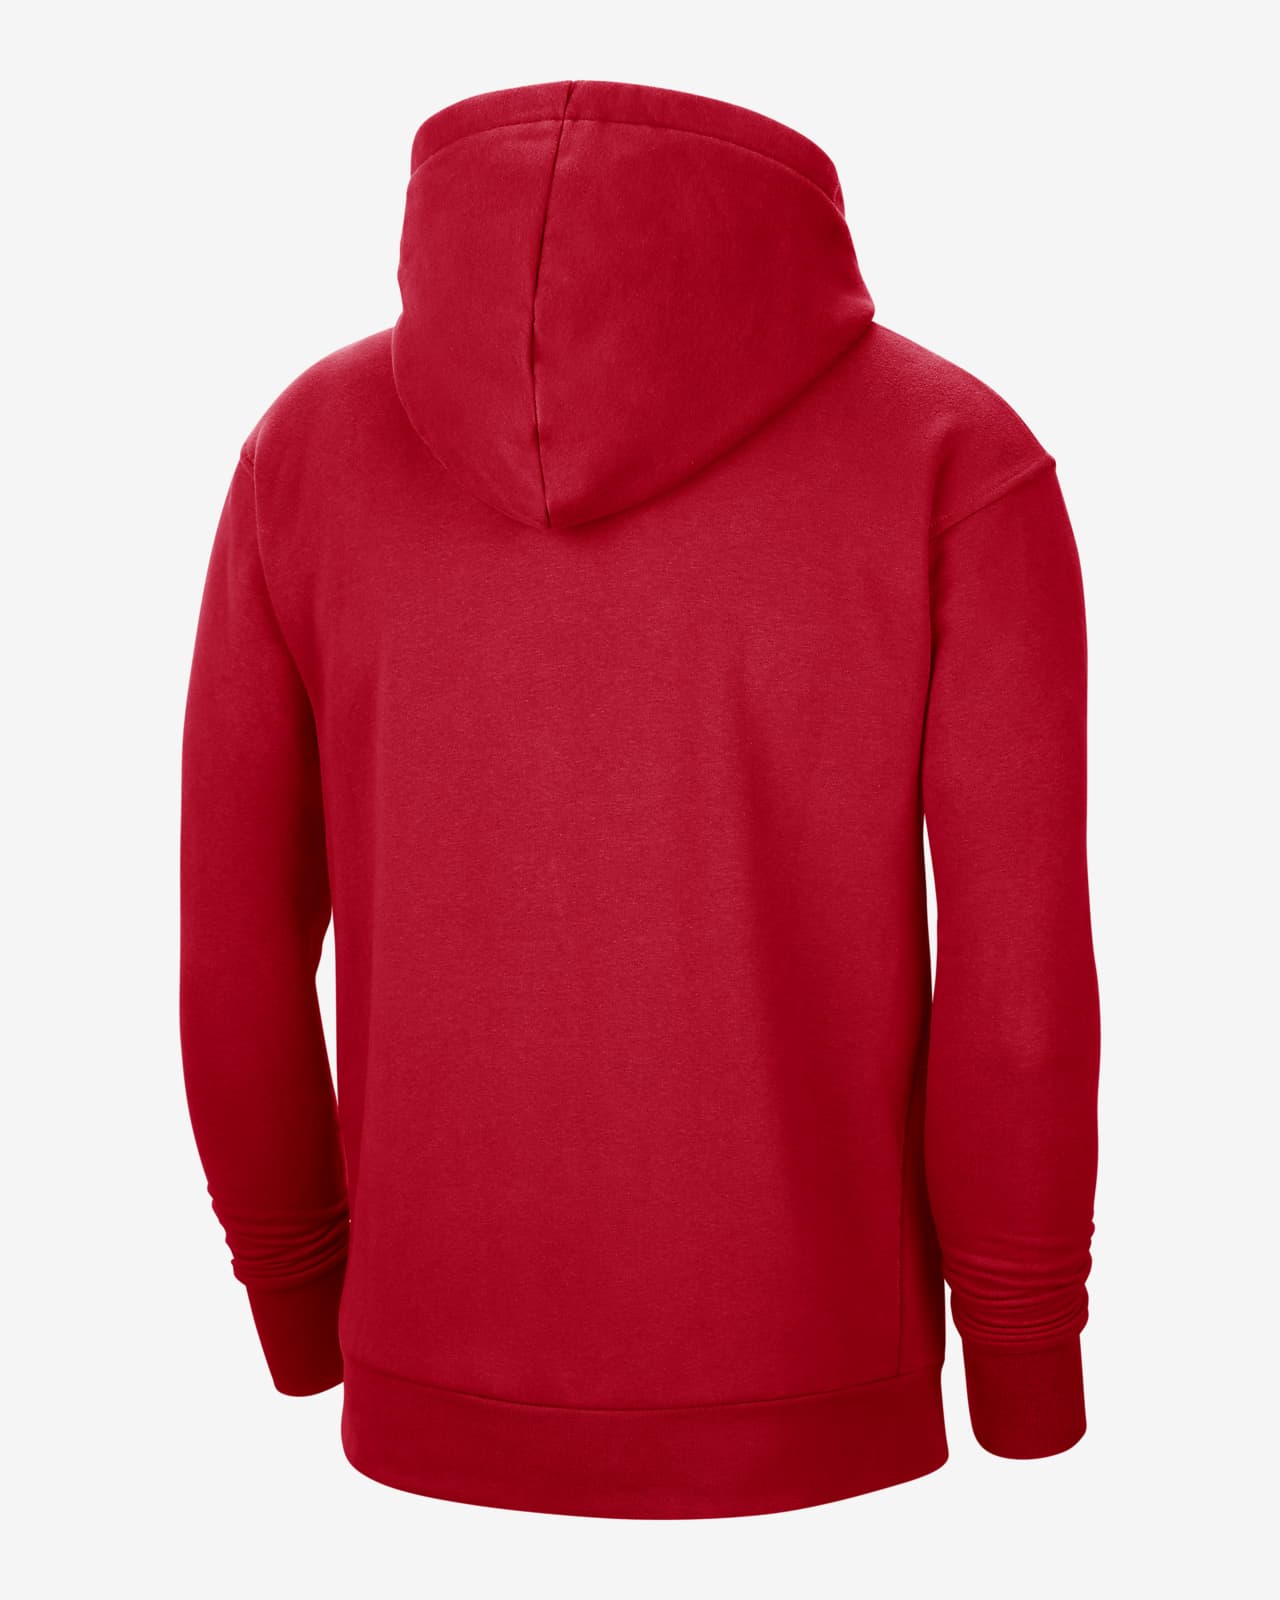 hoodie nike rouge homme